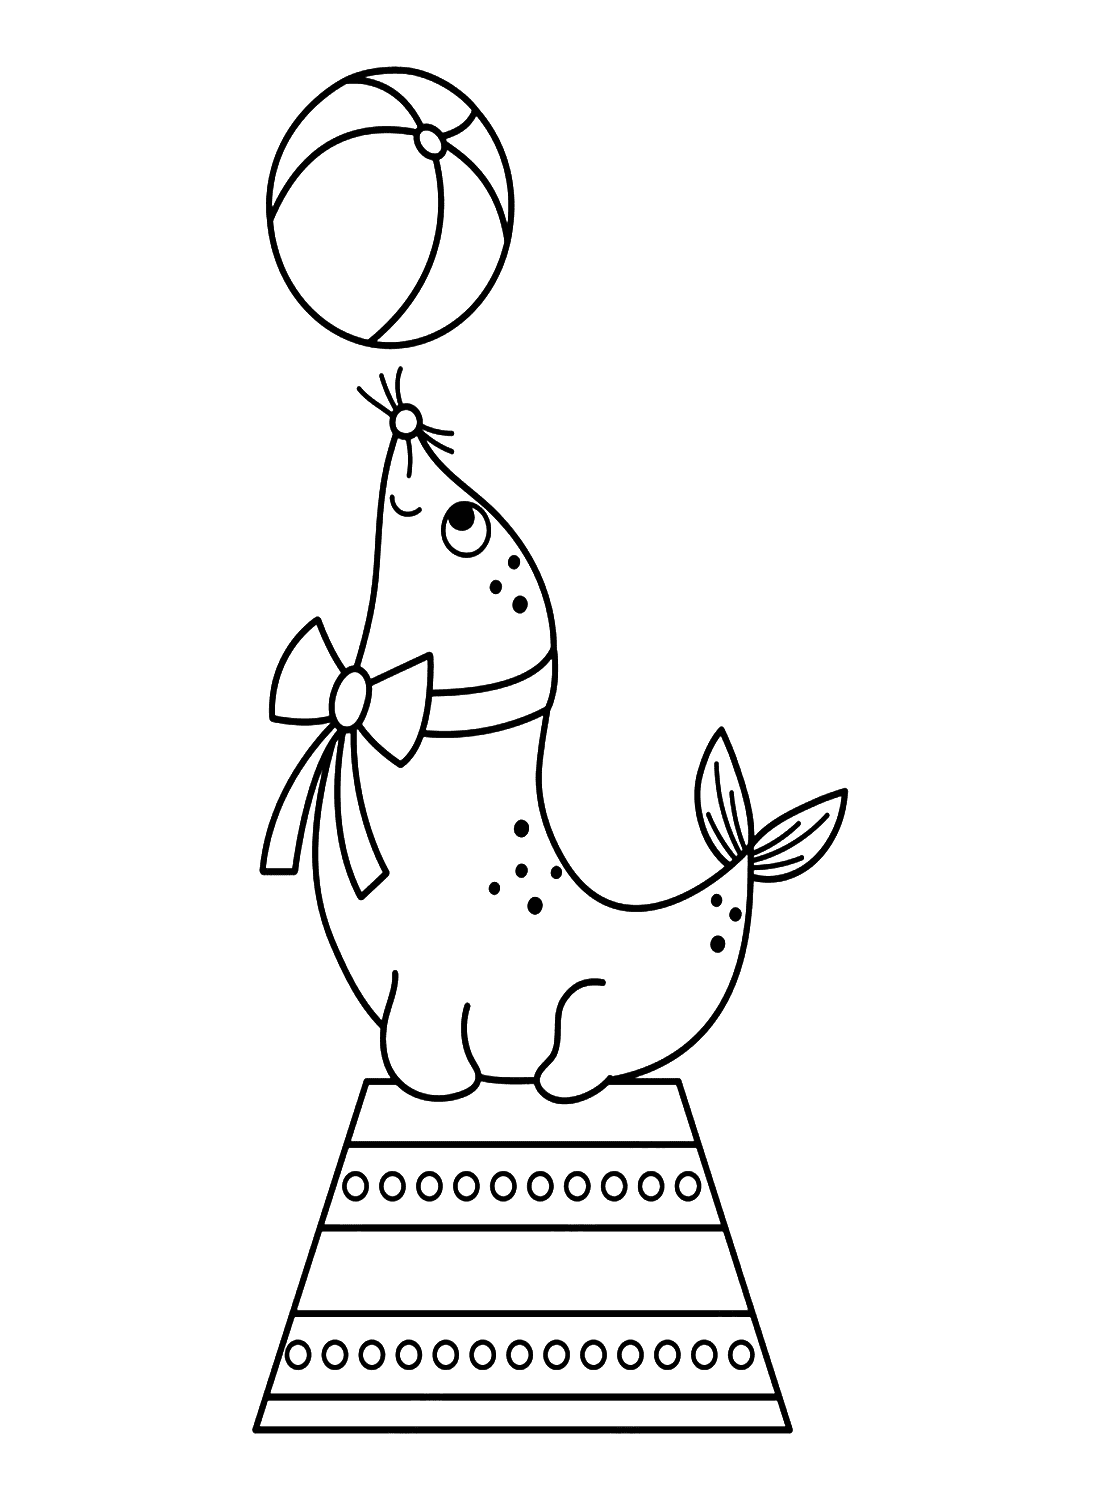 Leão-marinho em pé com uma bola from Leão-marinho